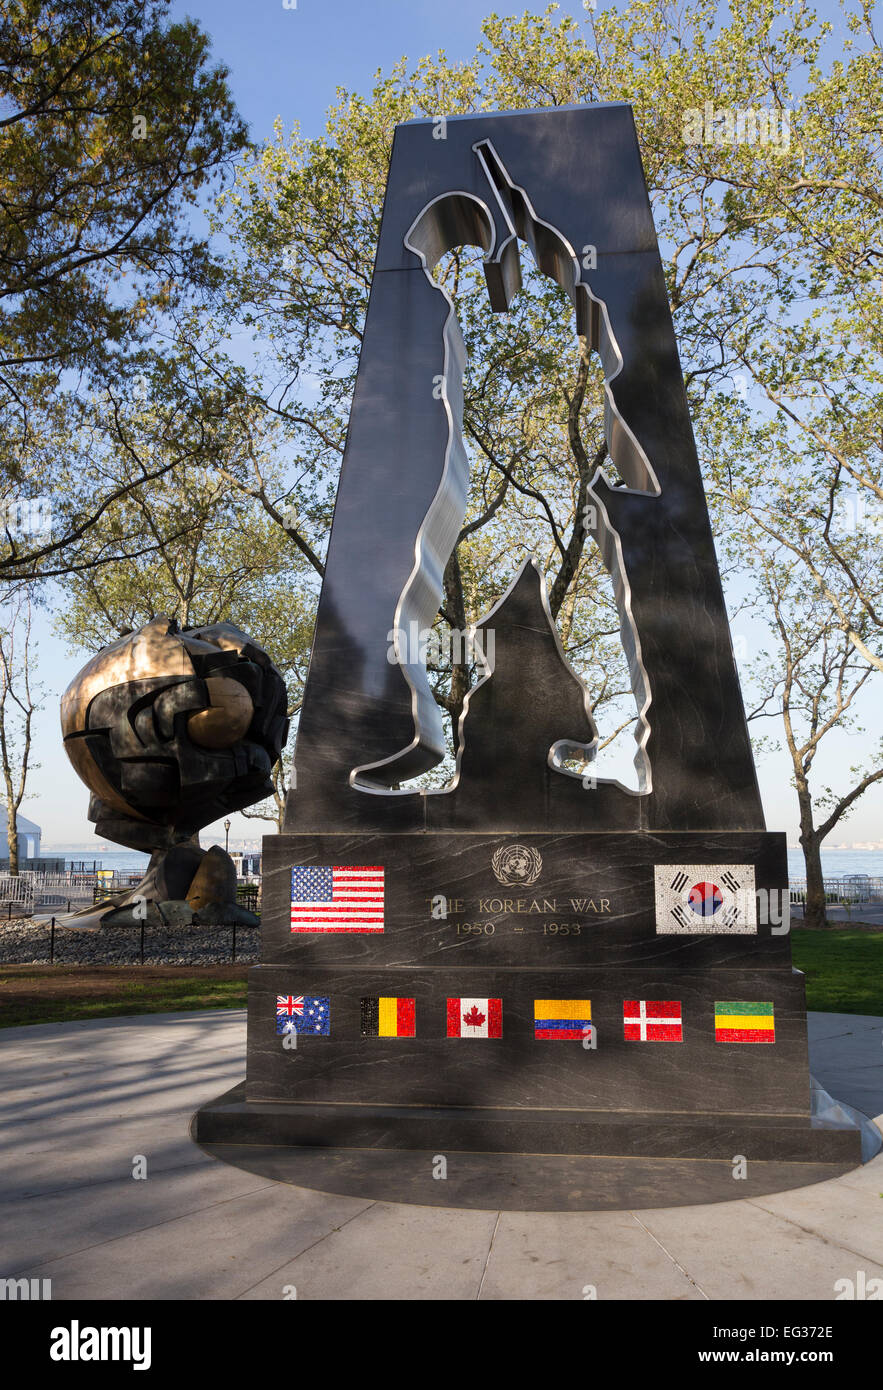 The New York Korean War Veterans Memorial in Battery Park, Lower Manhattan, New York. Stock Photo